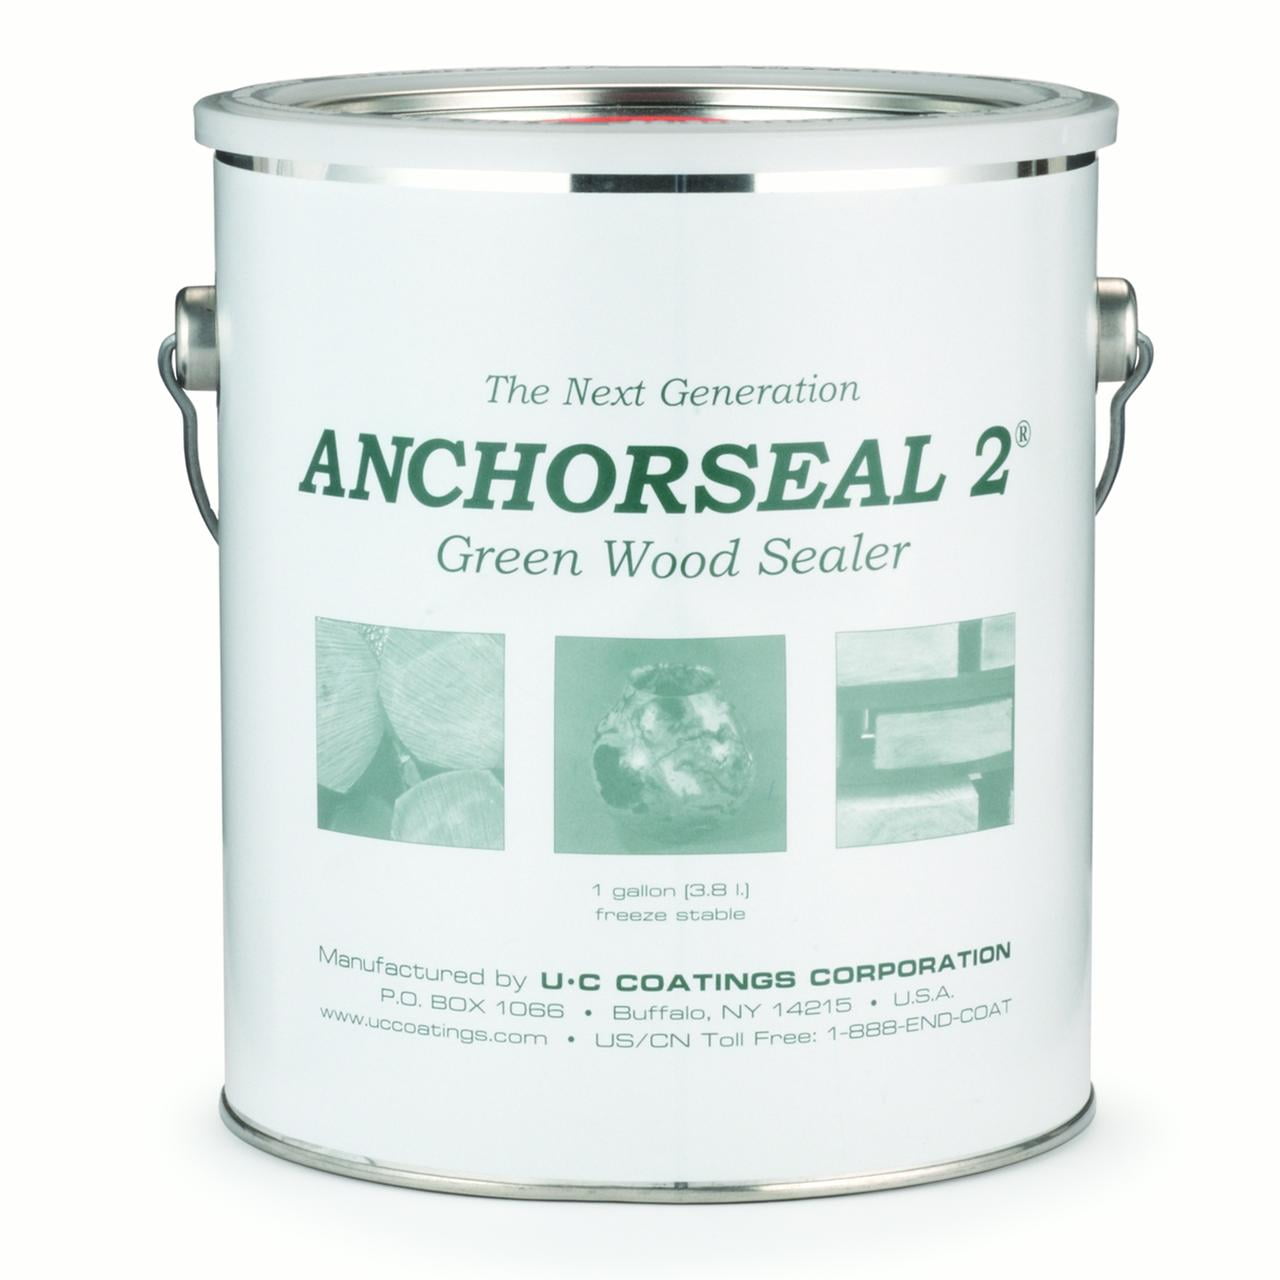 Anchorseal 2 cuarto de galón Madera Verde Sellador Nuevo y mejorar protege contra grano final 